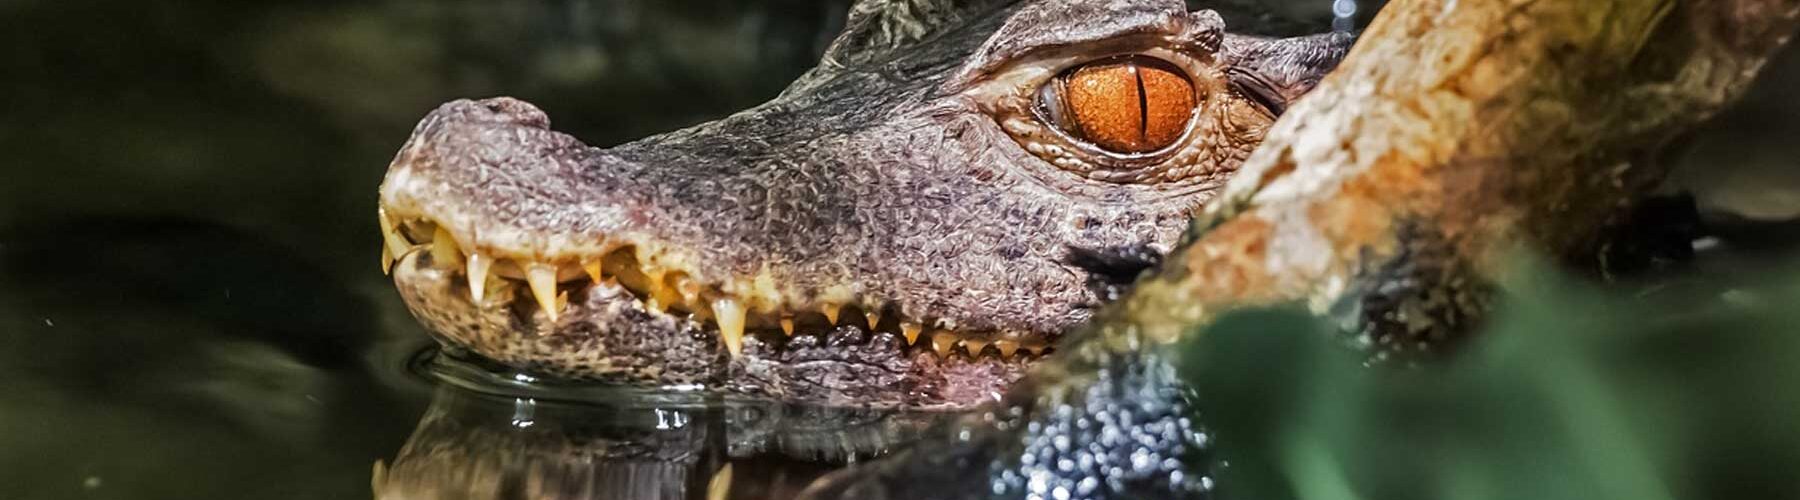 10 curiosidades sobre crocodilos